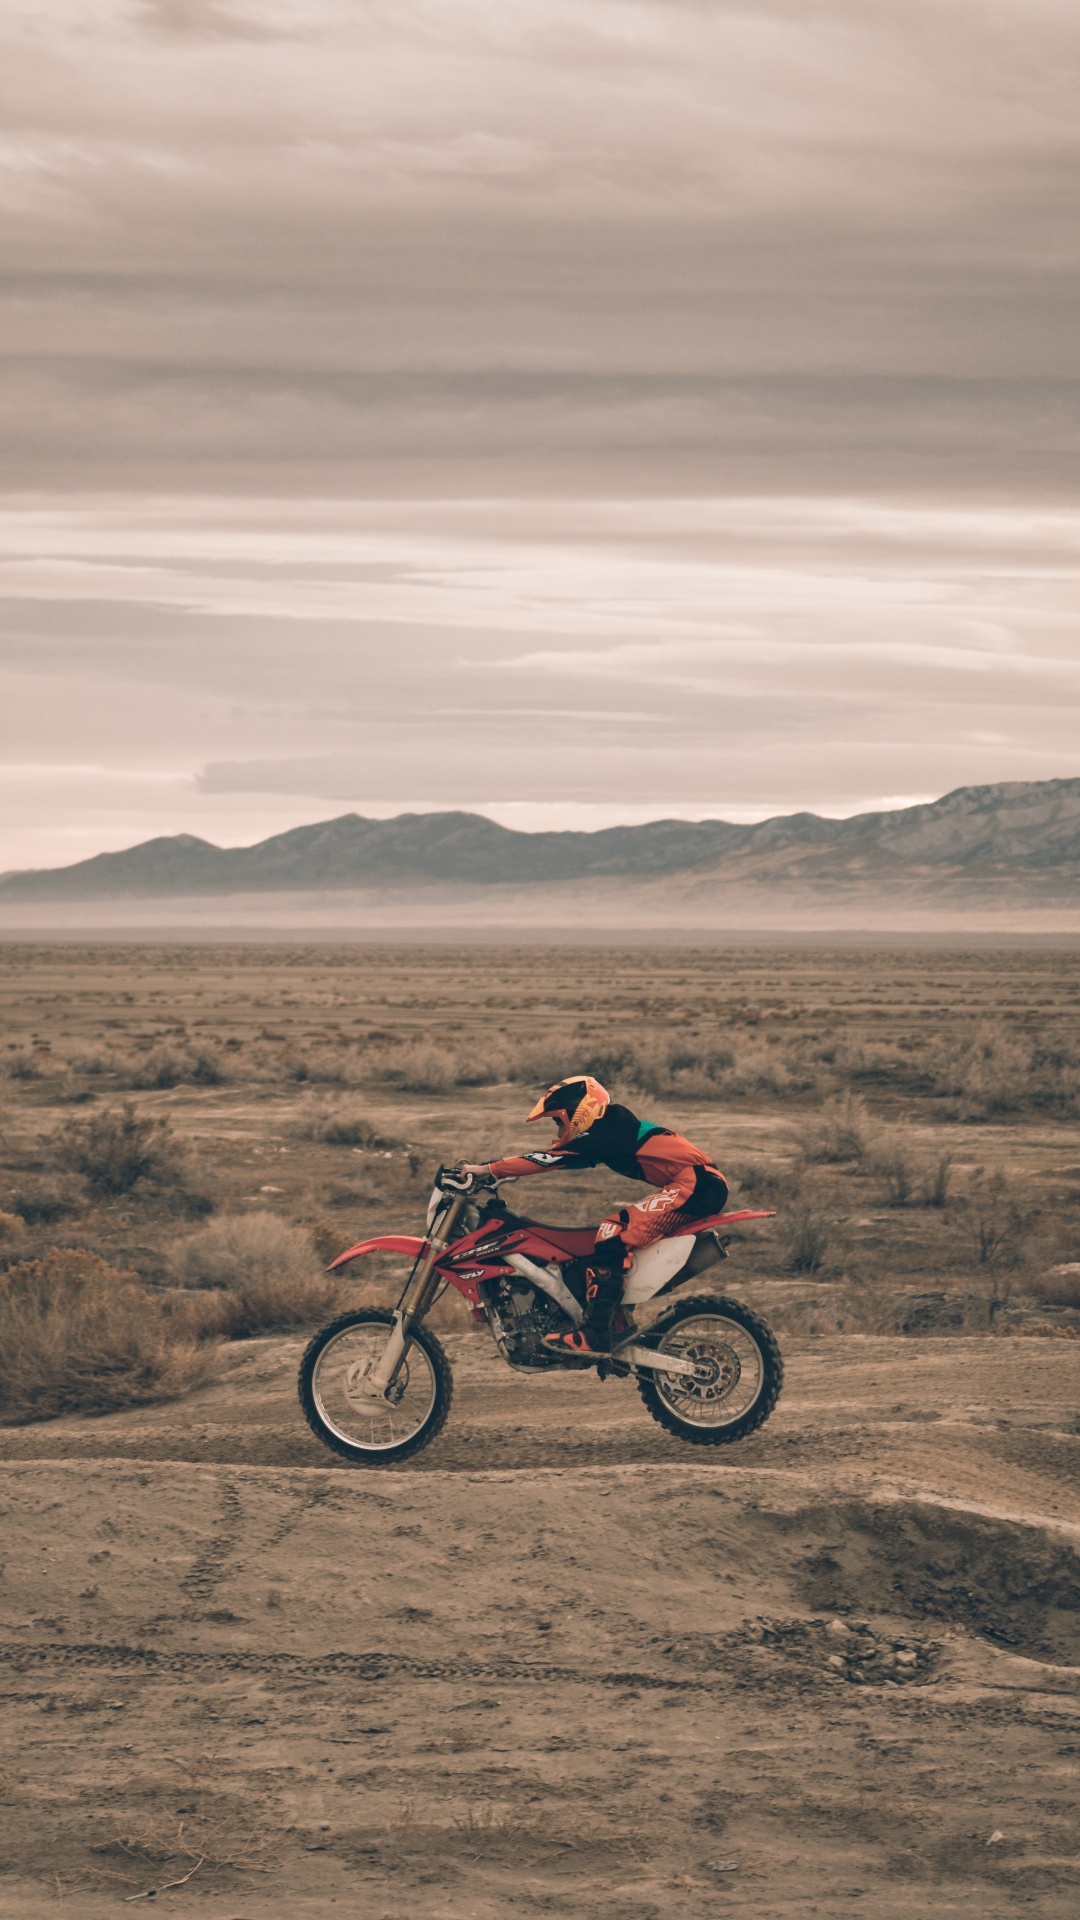 Hombre de Chaqueta Roja en Motocicleta Roja en Campo Marrón Durante el Día. Wallpaper in 1080x1920 Resolution